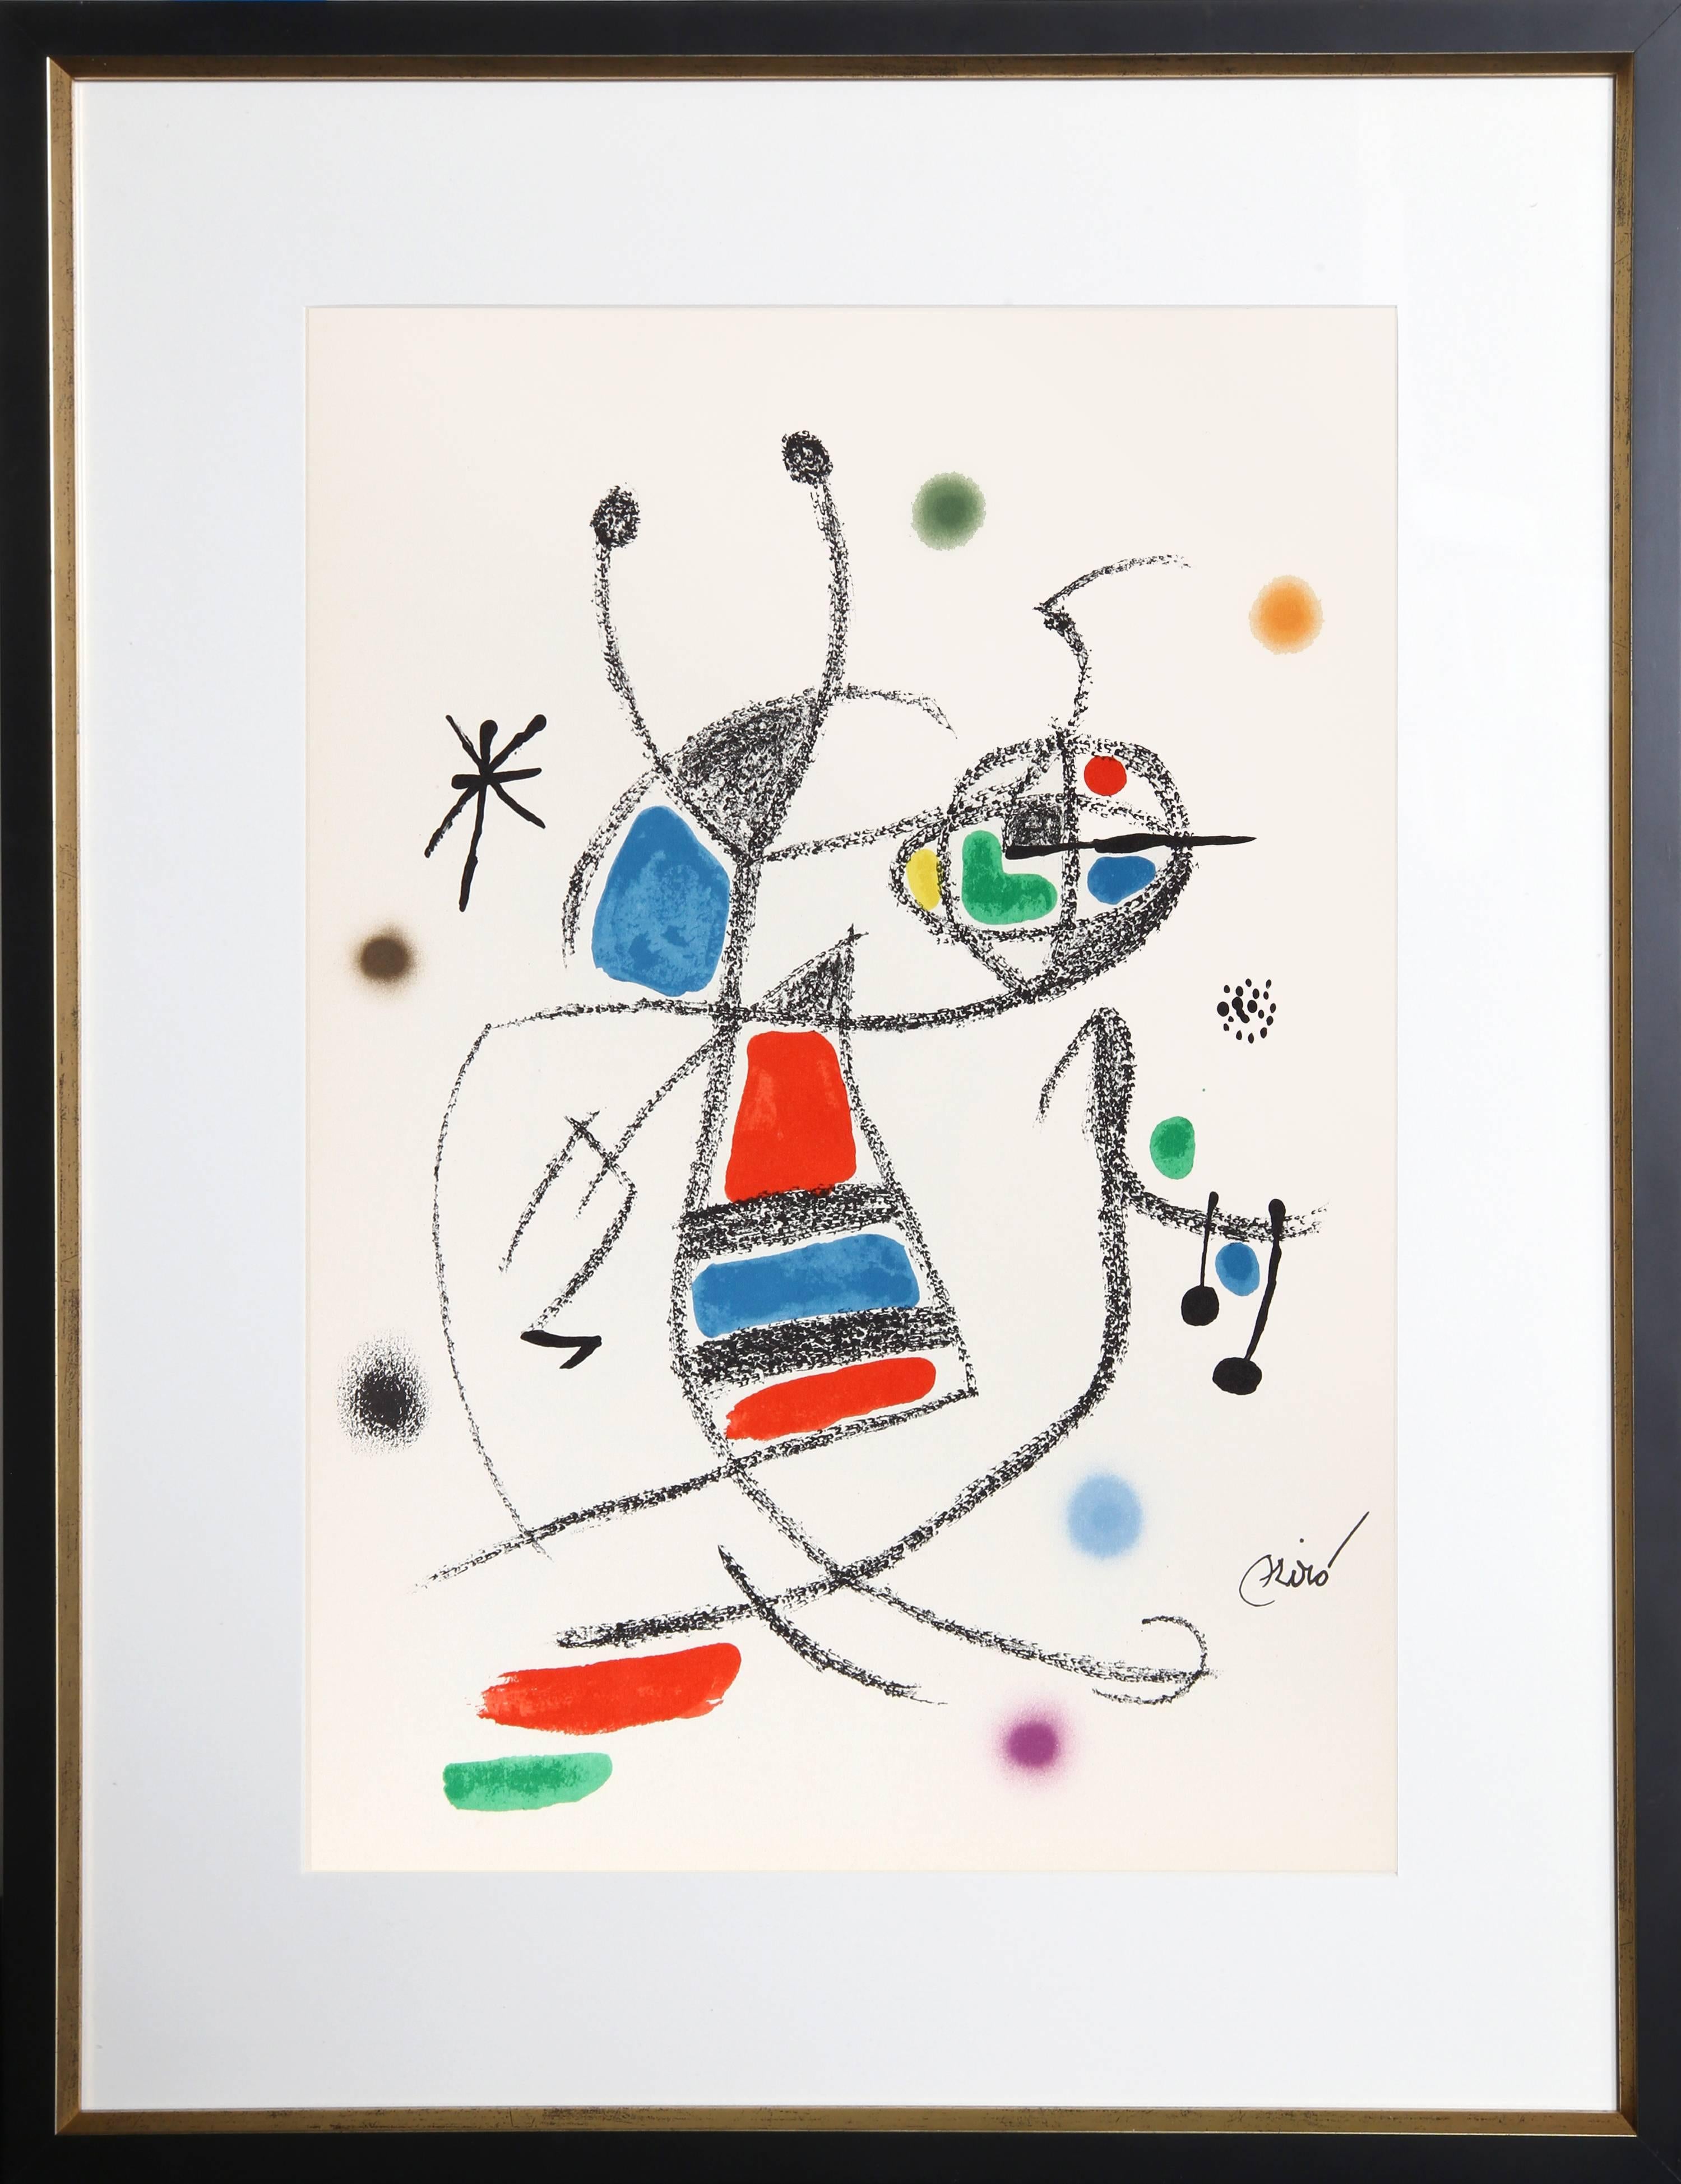 Joan Miró Abstract Print - Maravillas con Variaciones Acrosticas en el Jardin de Miro (Number 10)